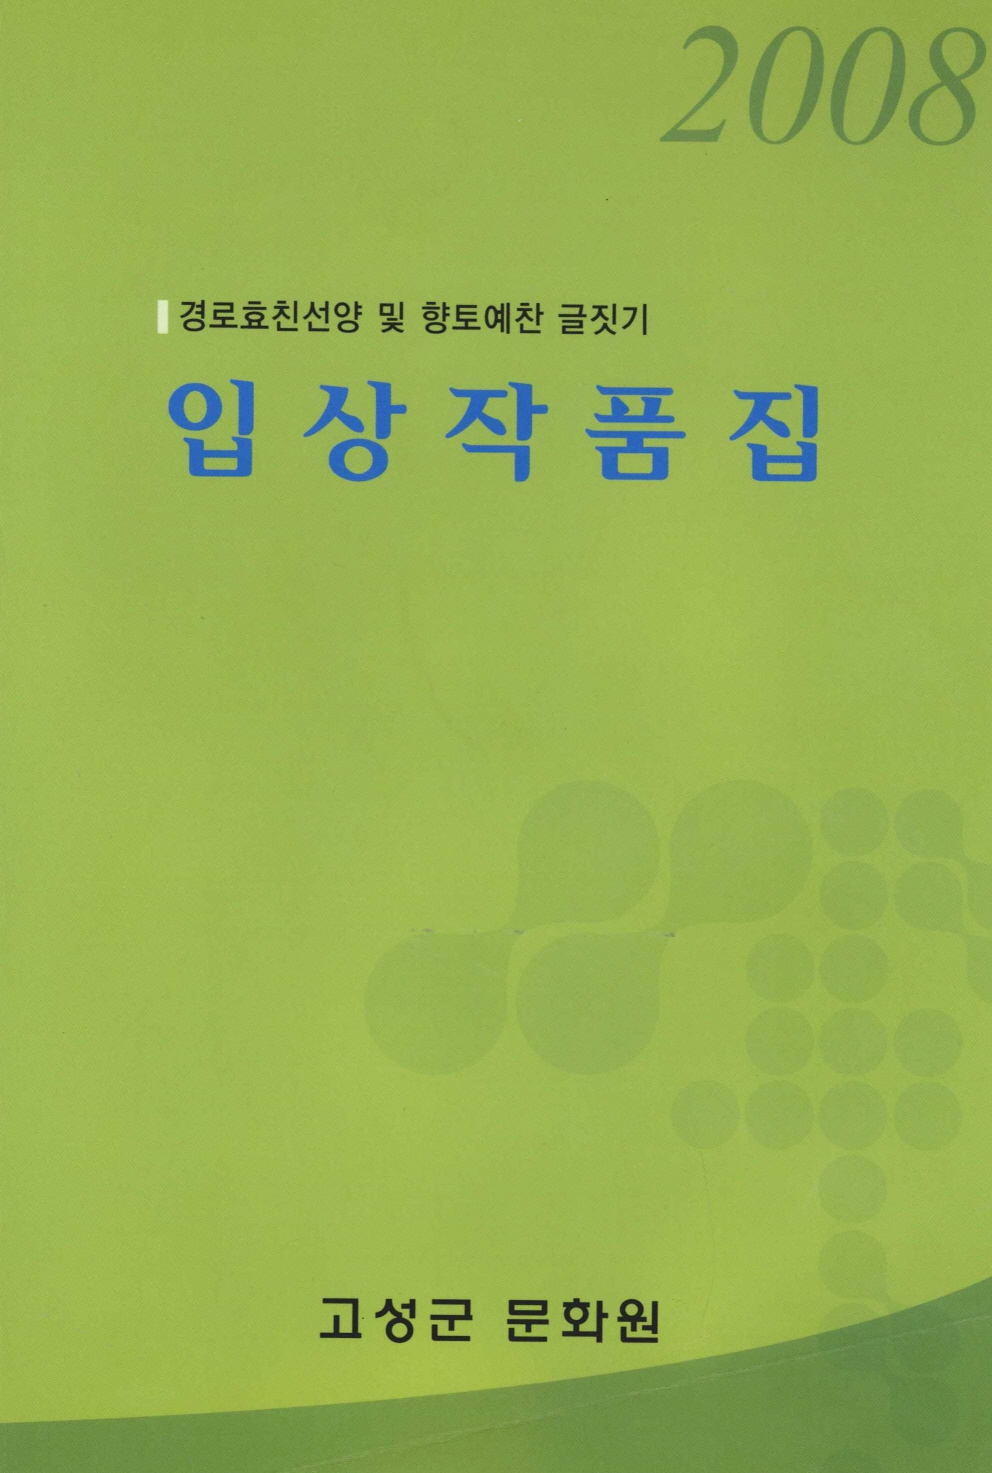 2008 경로효친선양 향토예찬 글짓기 입상작품집